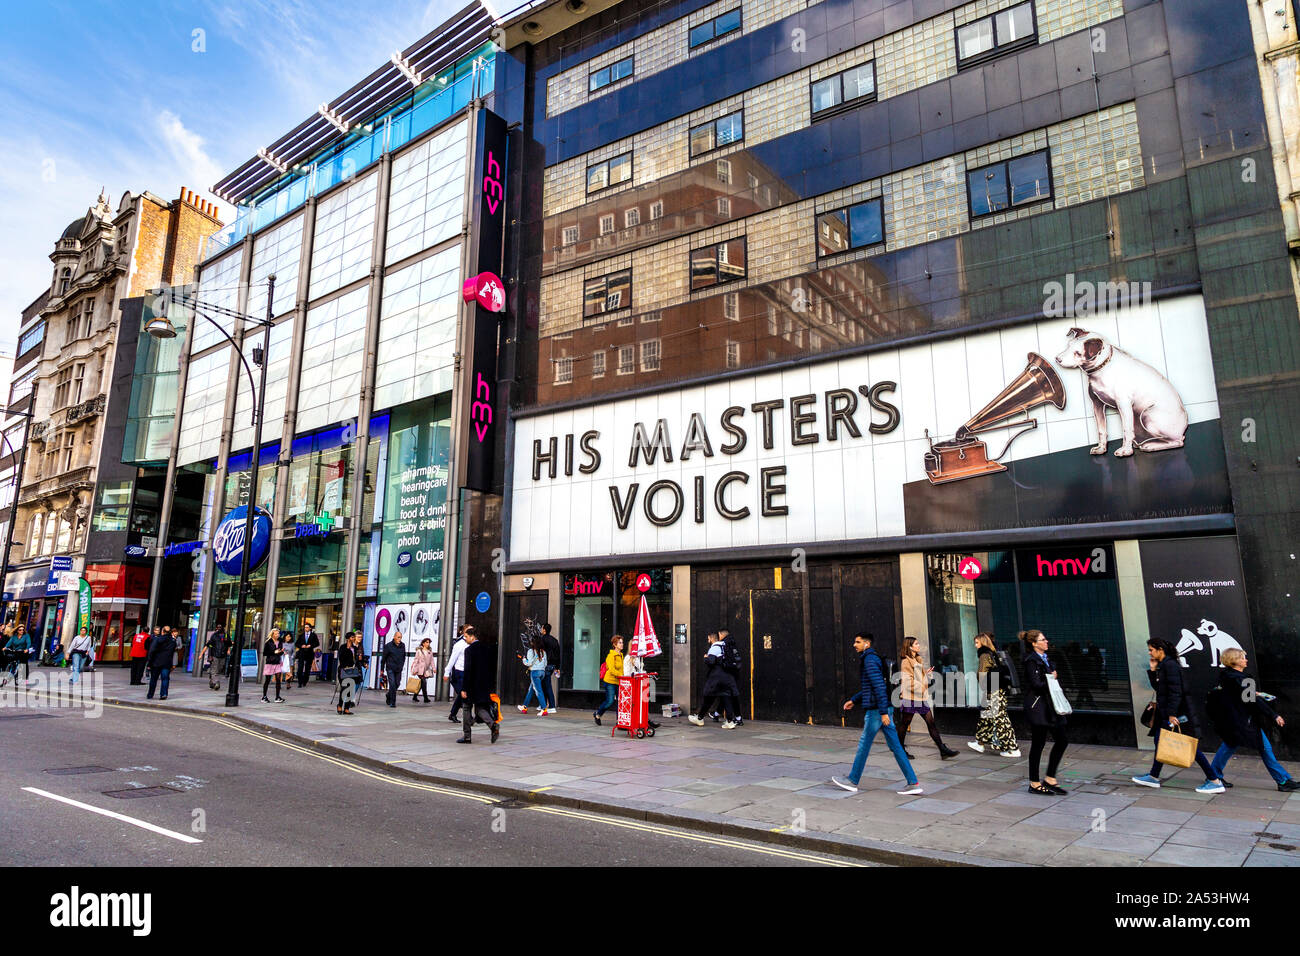 Fermé en permanence ses maîtres HMV (Voix) Oxford Street flagship store, Londres, UK Banque D'Images